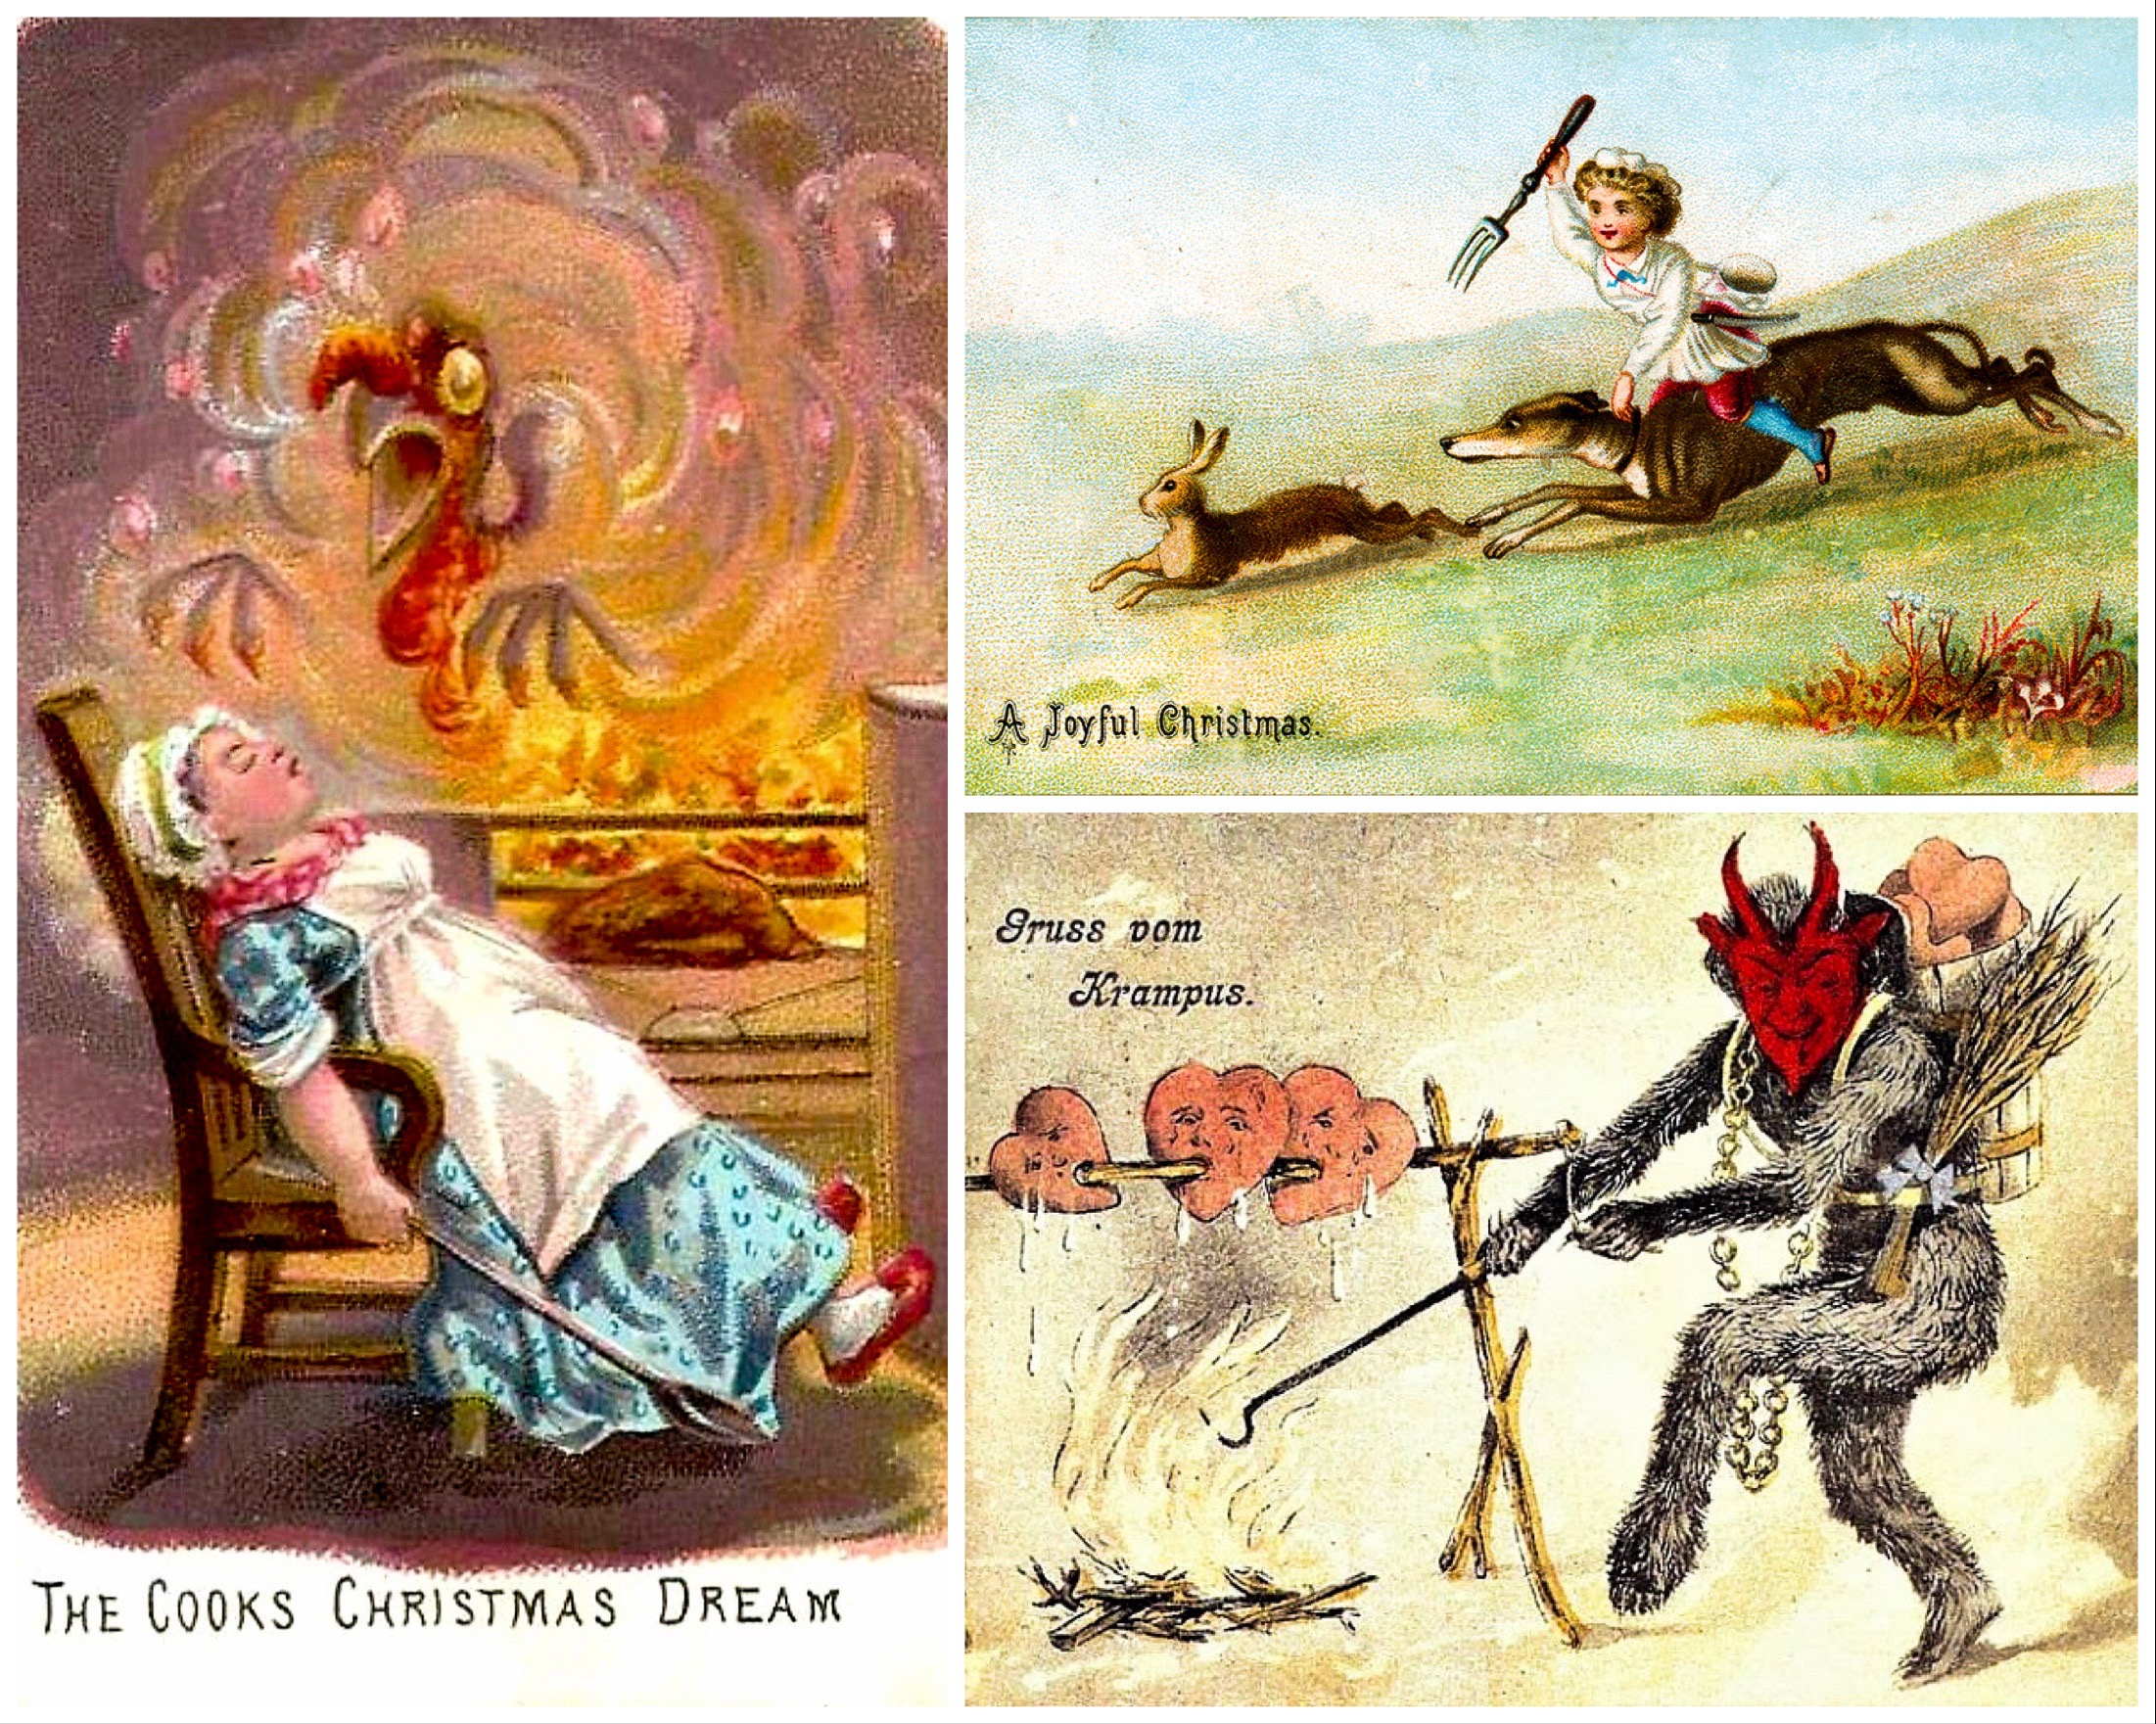 A karácsony a nagy zabálások időszaka. Így volt ez a viktoriánus kor Angliájában is, csak a korabeli képeslapok tanúsága szerint a karácsonyi menü alapanyagai, beszerzése, ábrázolása és elkészítése még más normák szerint zajlott, mint manapság.